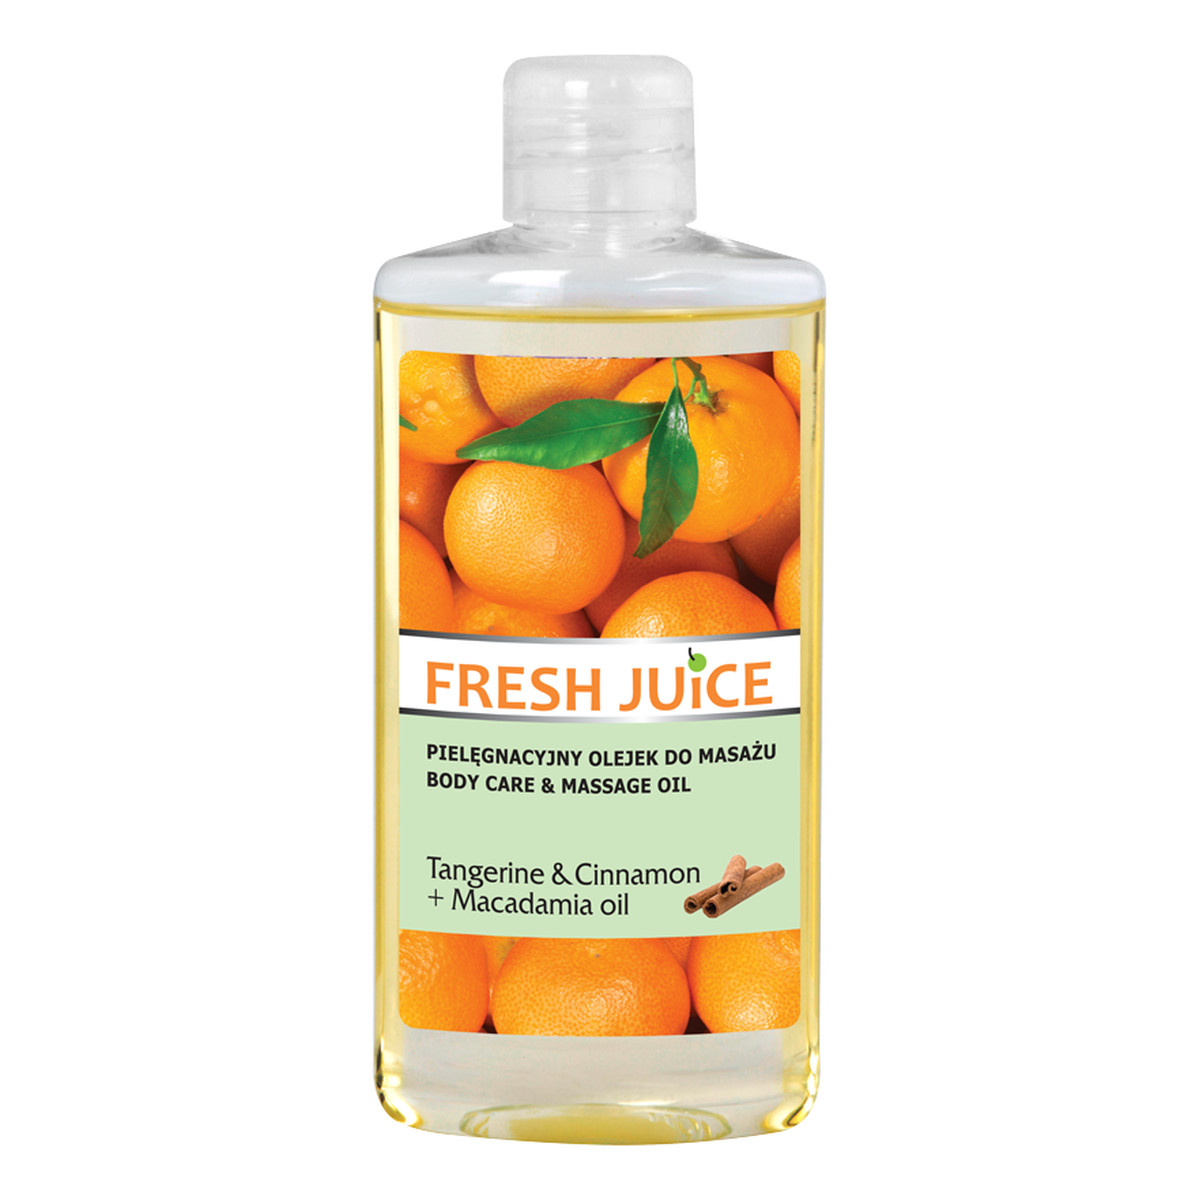 Fresh Juice Tangerine & Cinnamon+Macadamia Oil pielęgnacyjny olejek do masażu 150ml